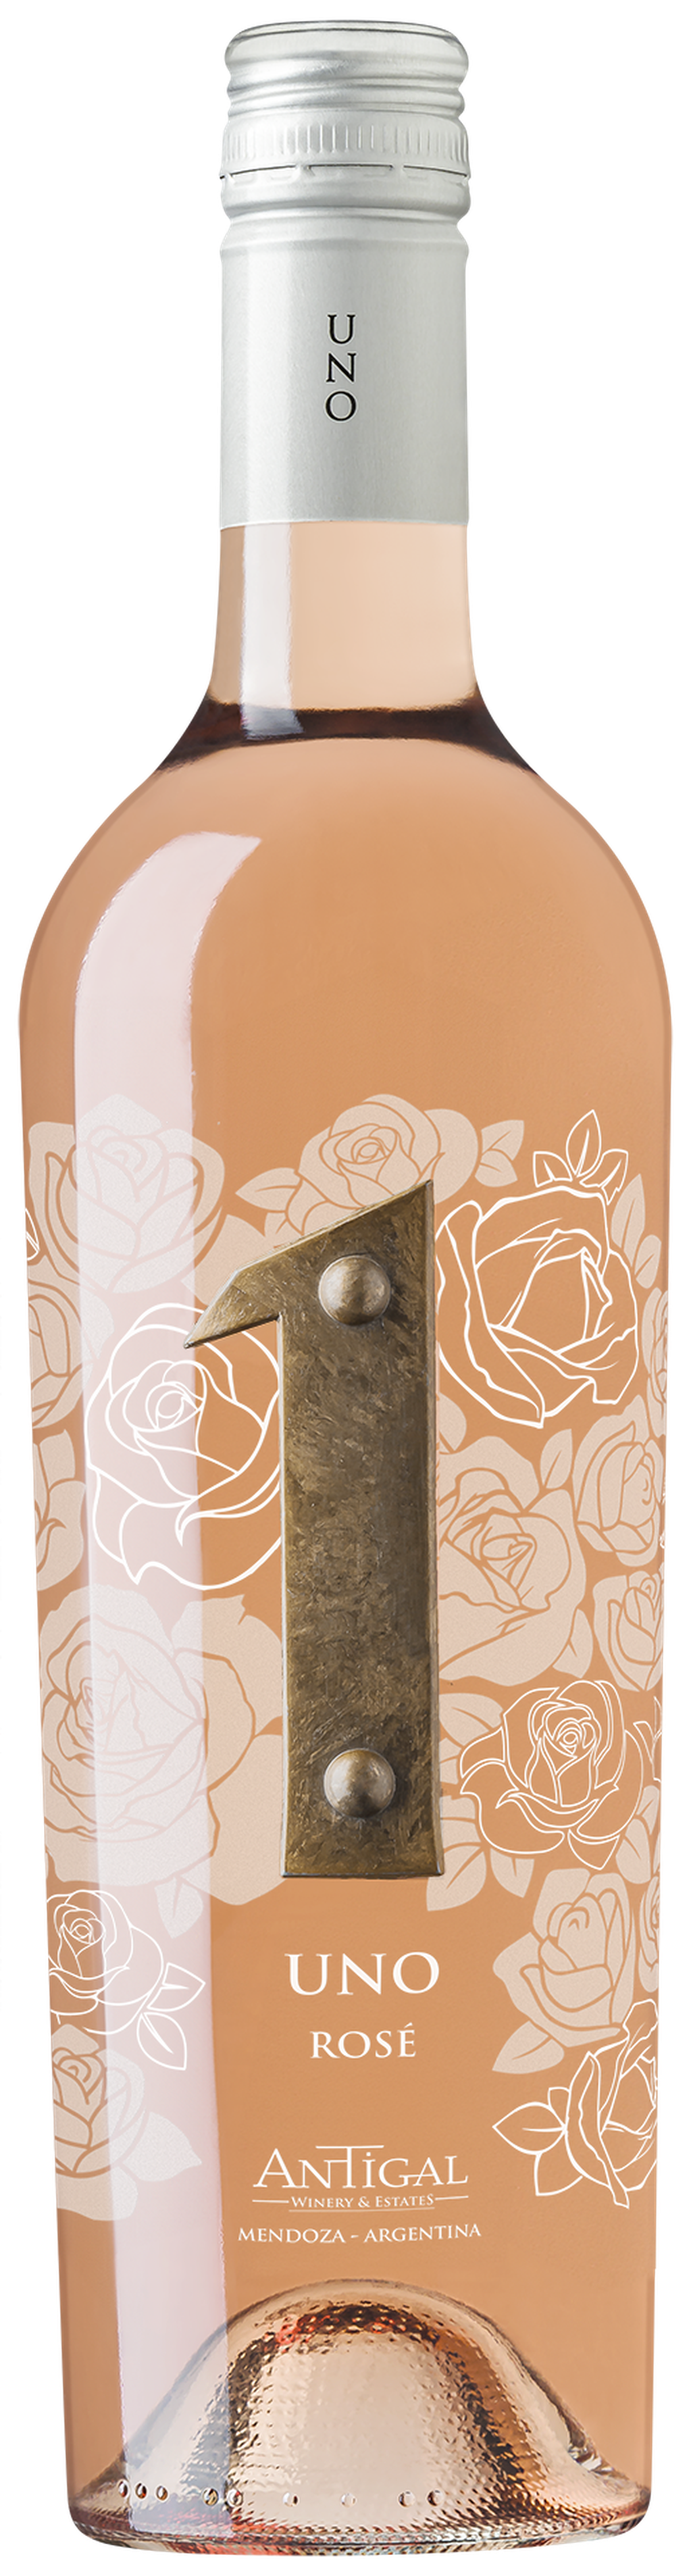 UNO Rosé de Antigal Winery & Estates. - Gentileza